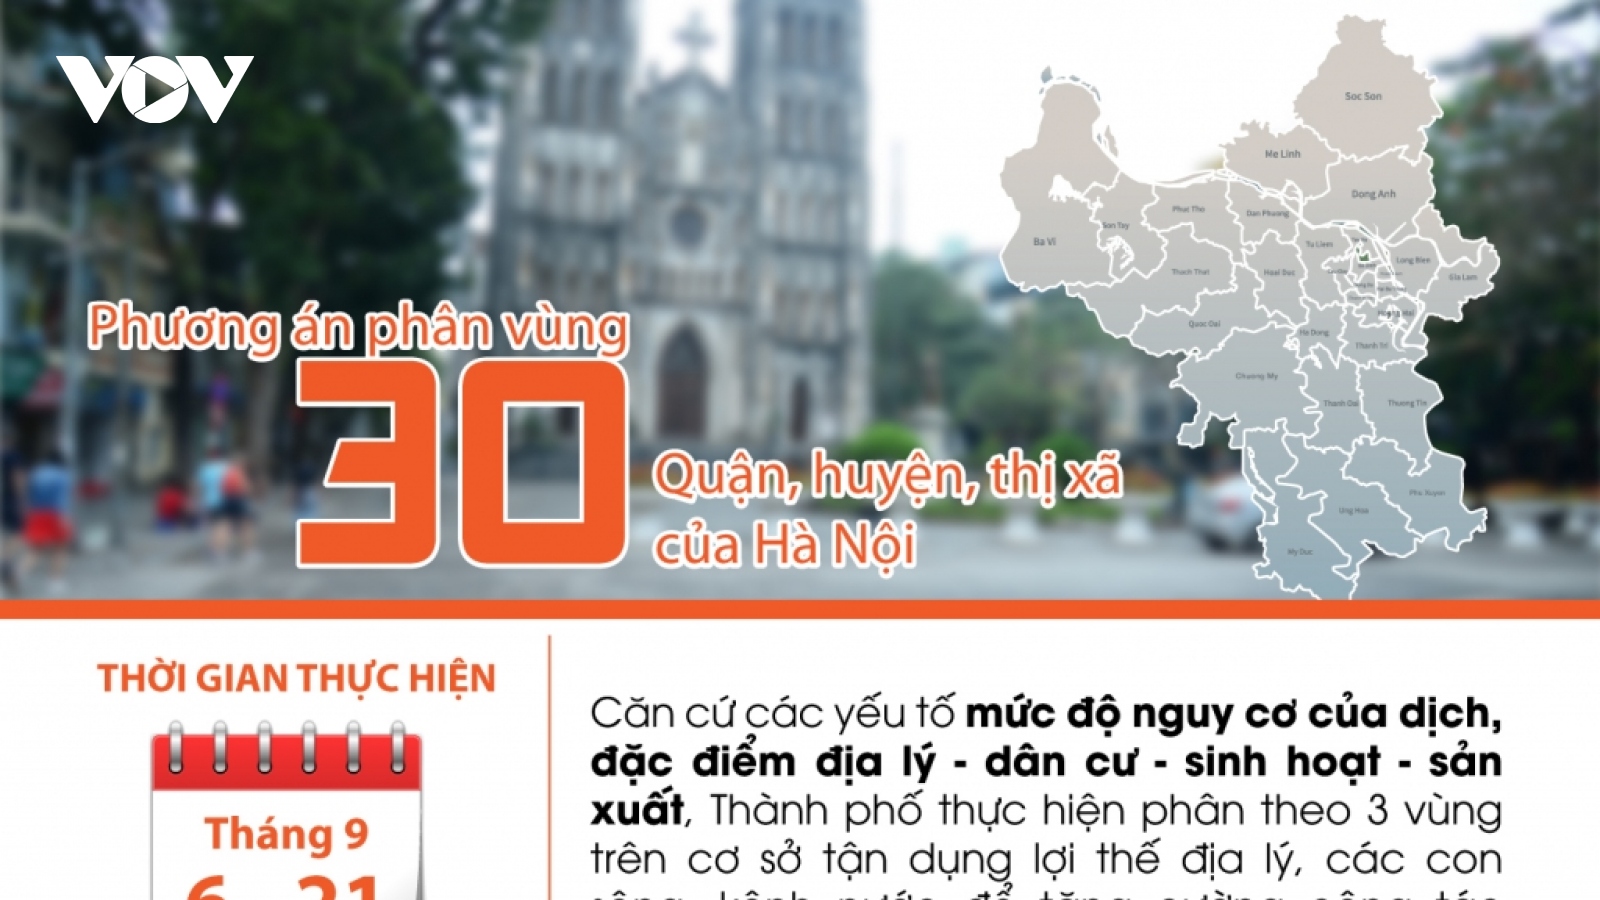 Phương án phân vùng 30 quận, huyện, thị xã của Hà Nội sau ngày 6/9